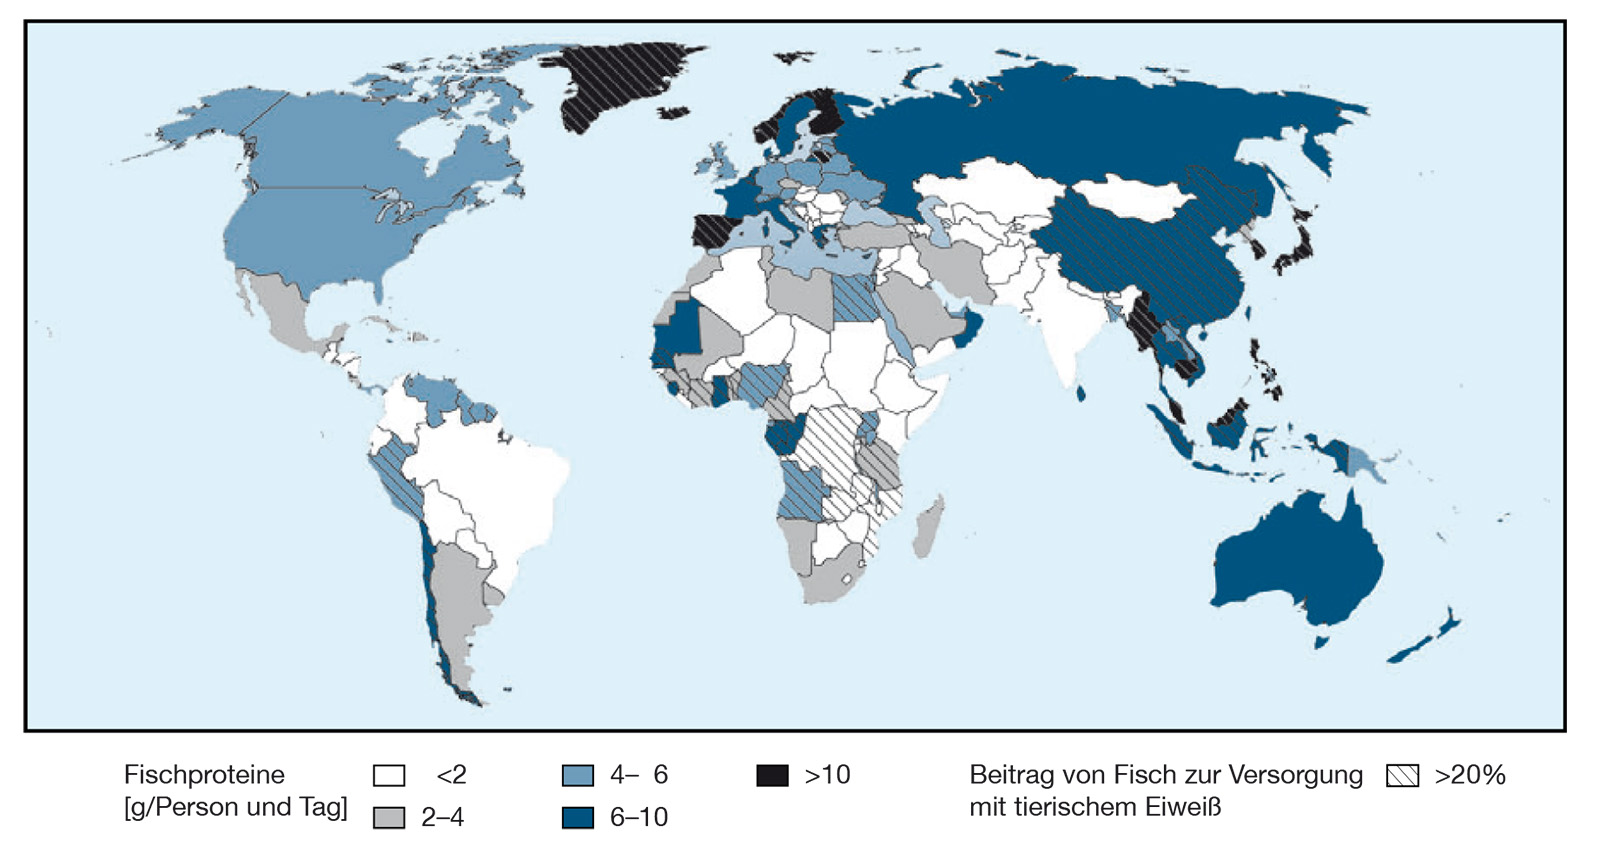 Beitrag von Fisch und Meeresfrüchten zur Versorgung mit tierischen Proteinen (Durchschnitt von 2007 bis 2009).